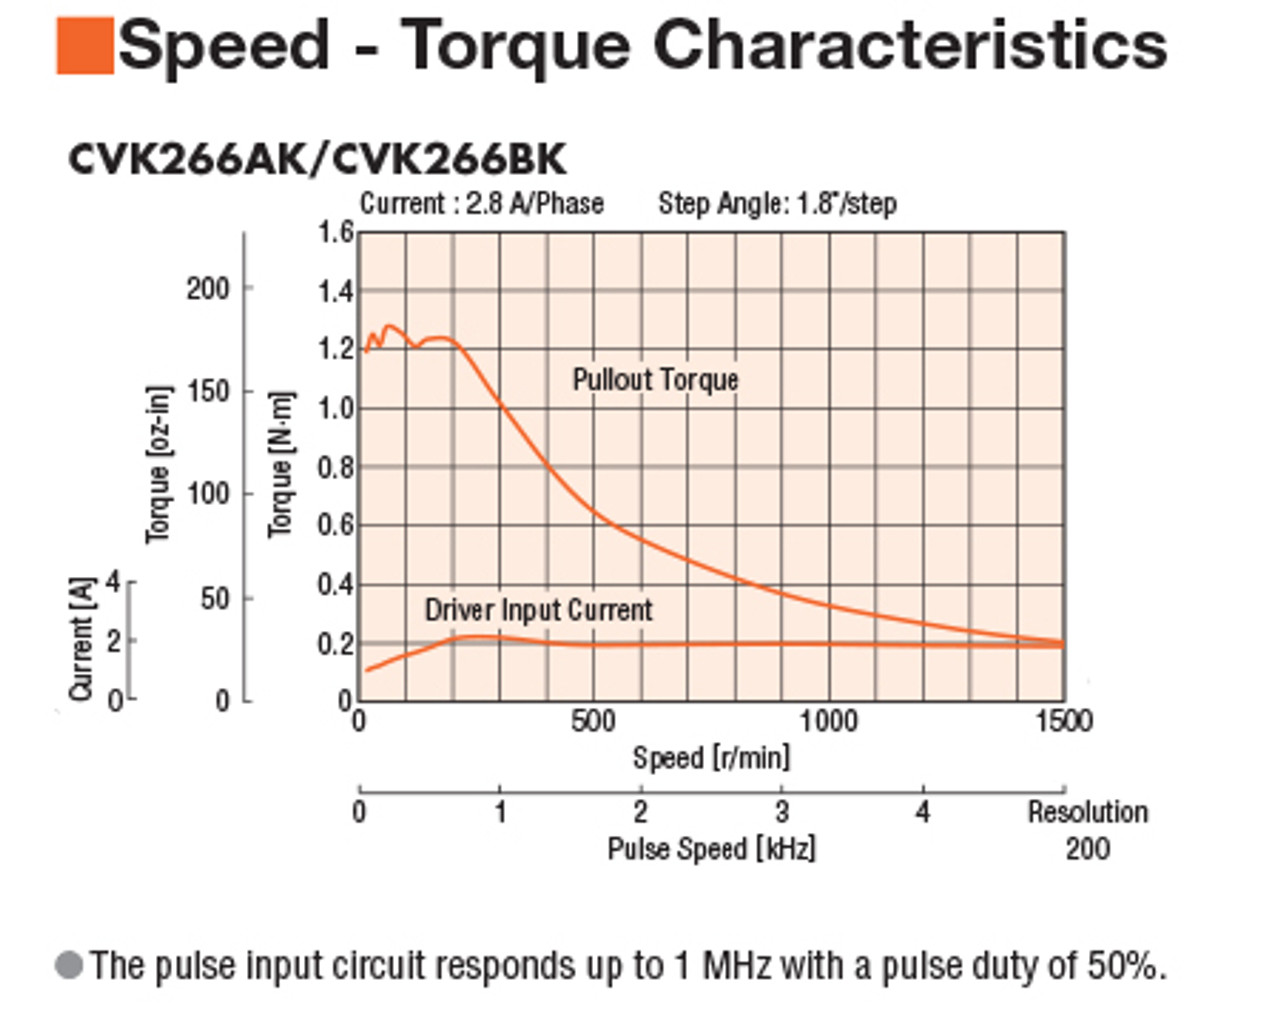 CVK266BK - Speed-Torque